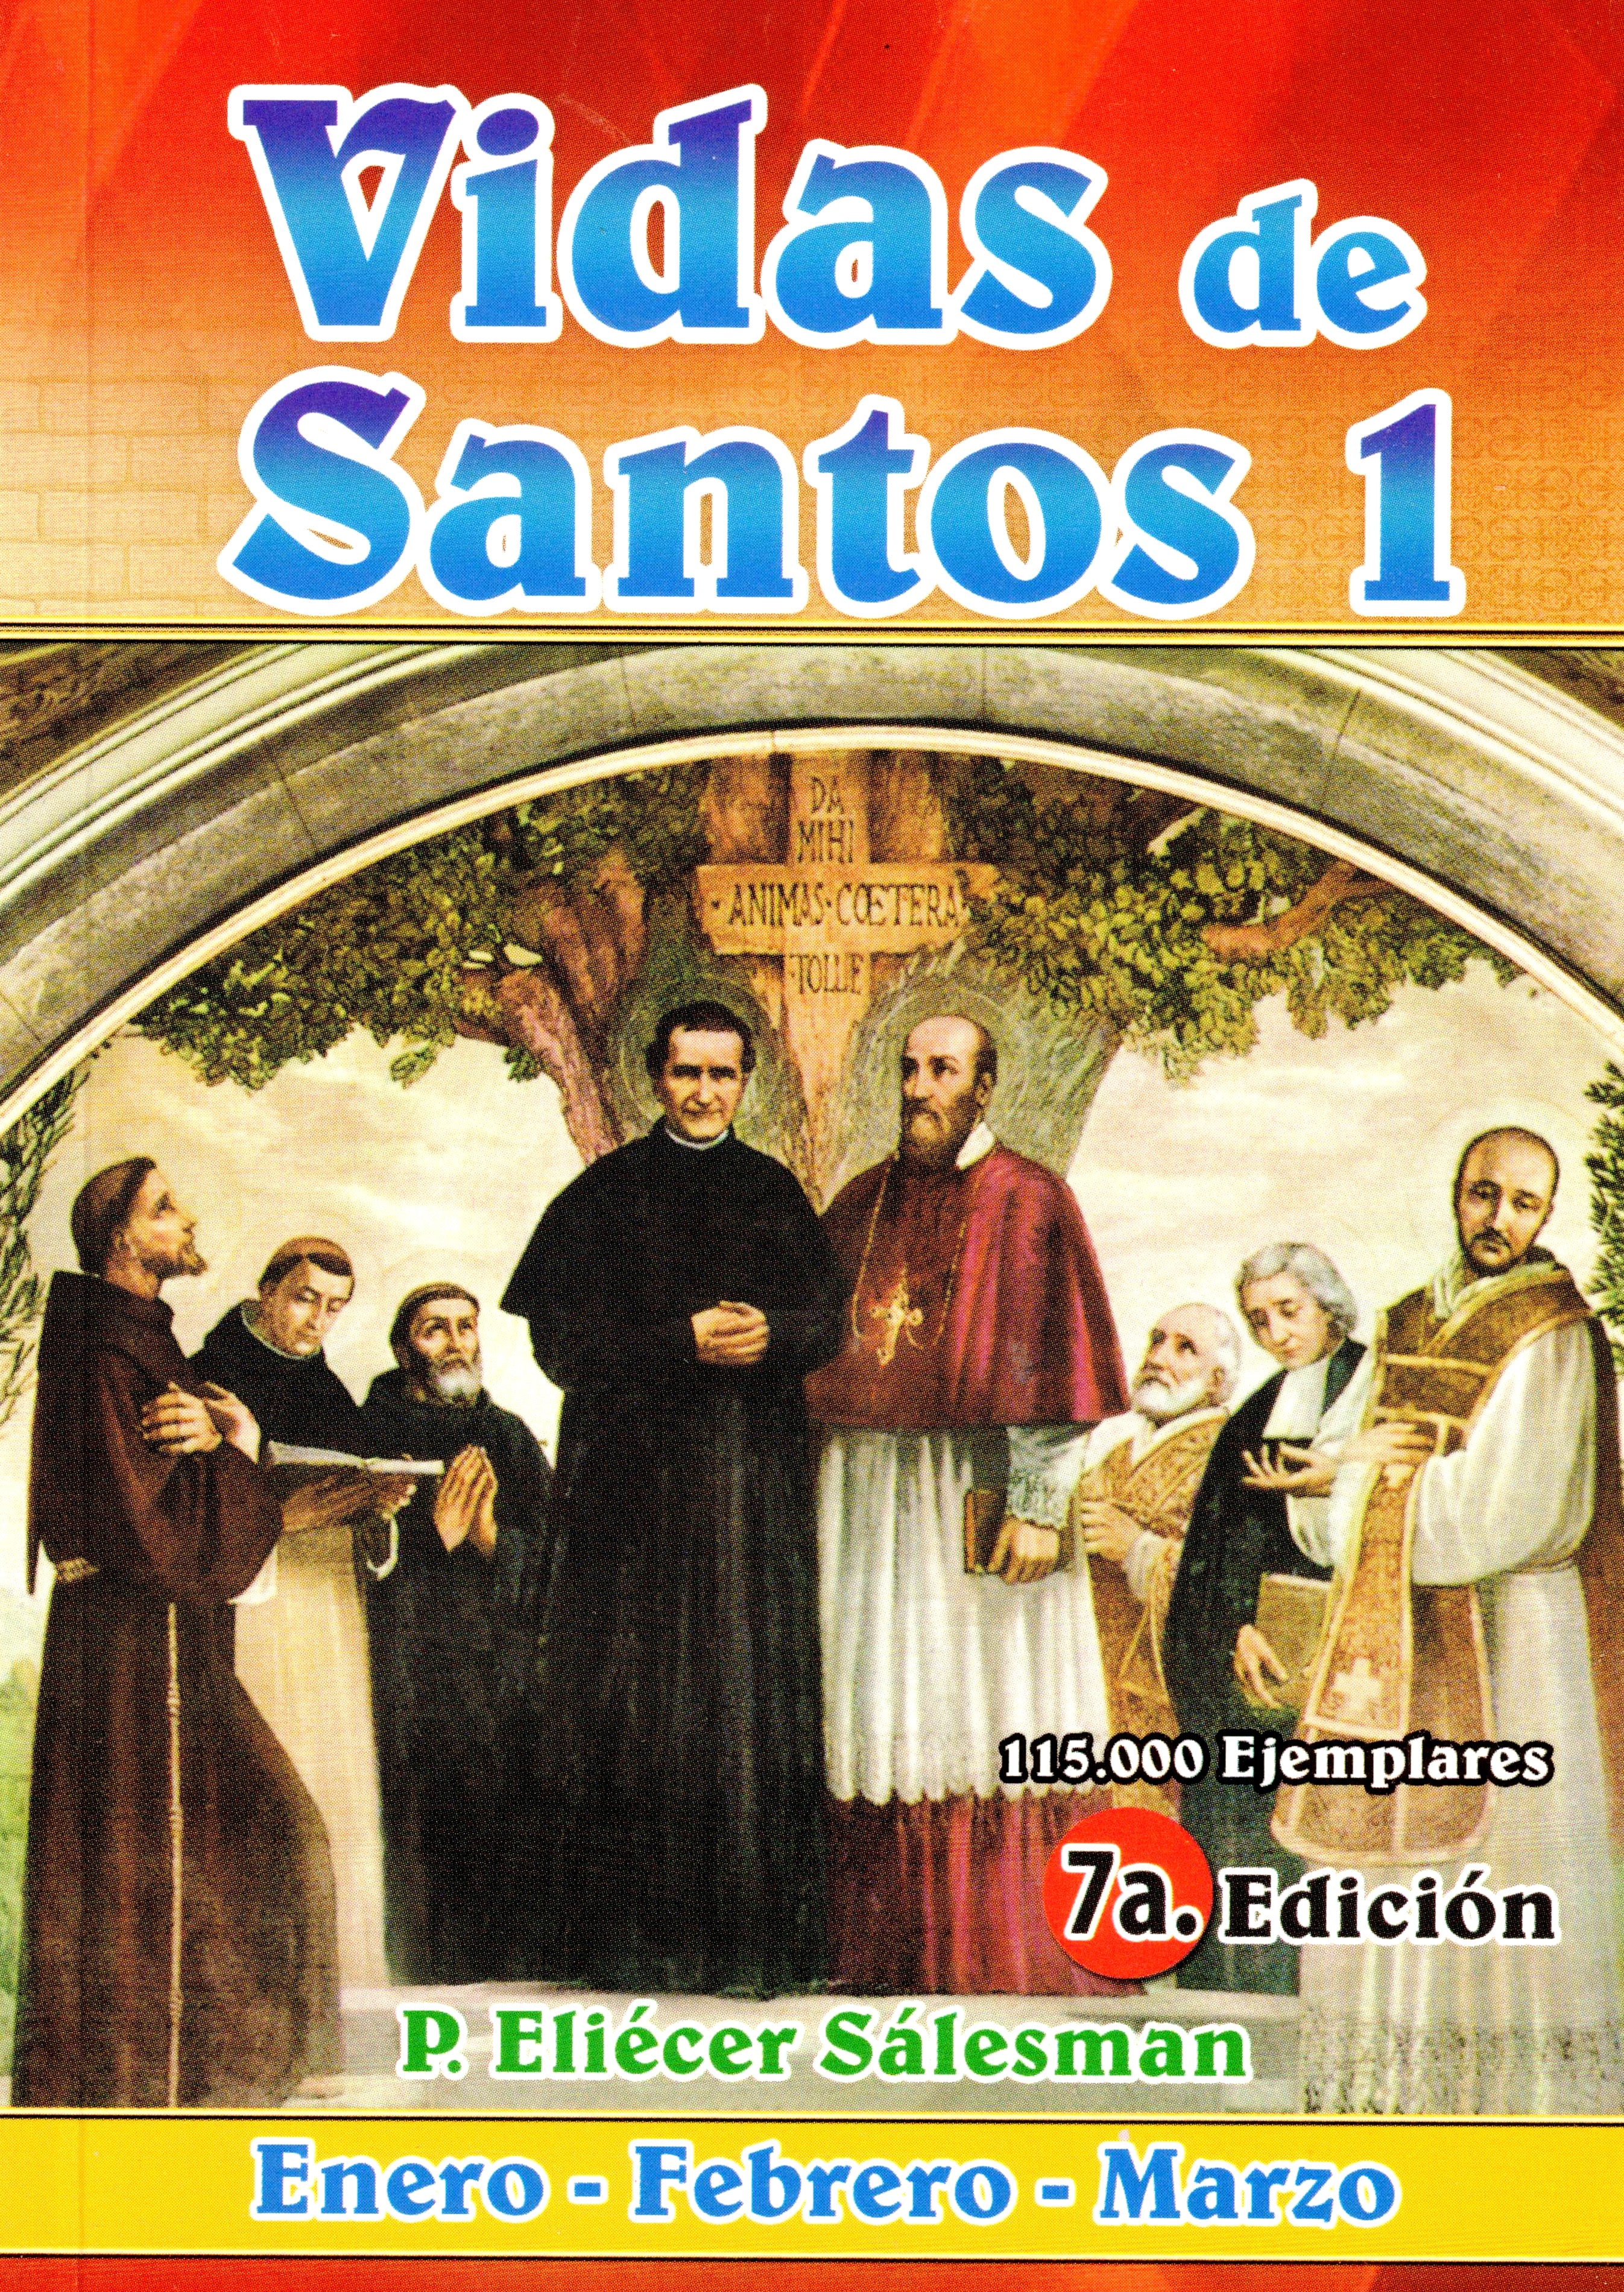 Vida de Santos 1 (Enero, Febrero y Marzo)